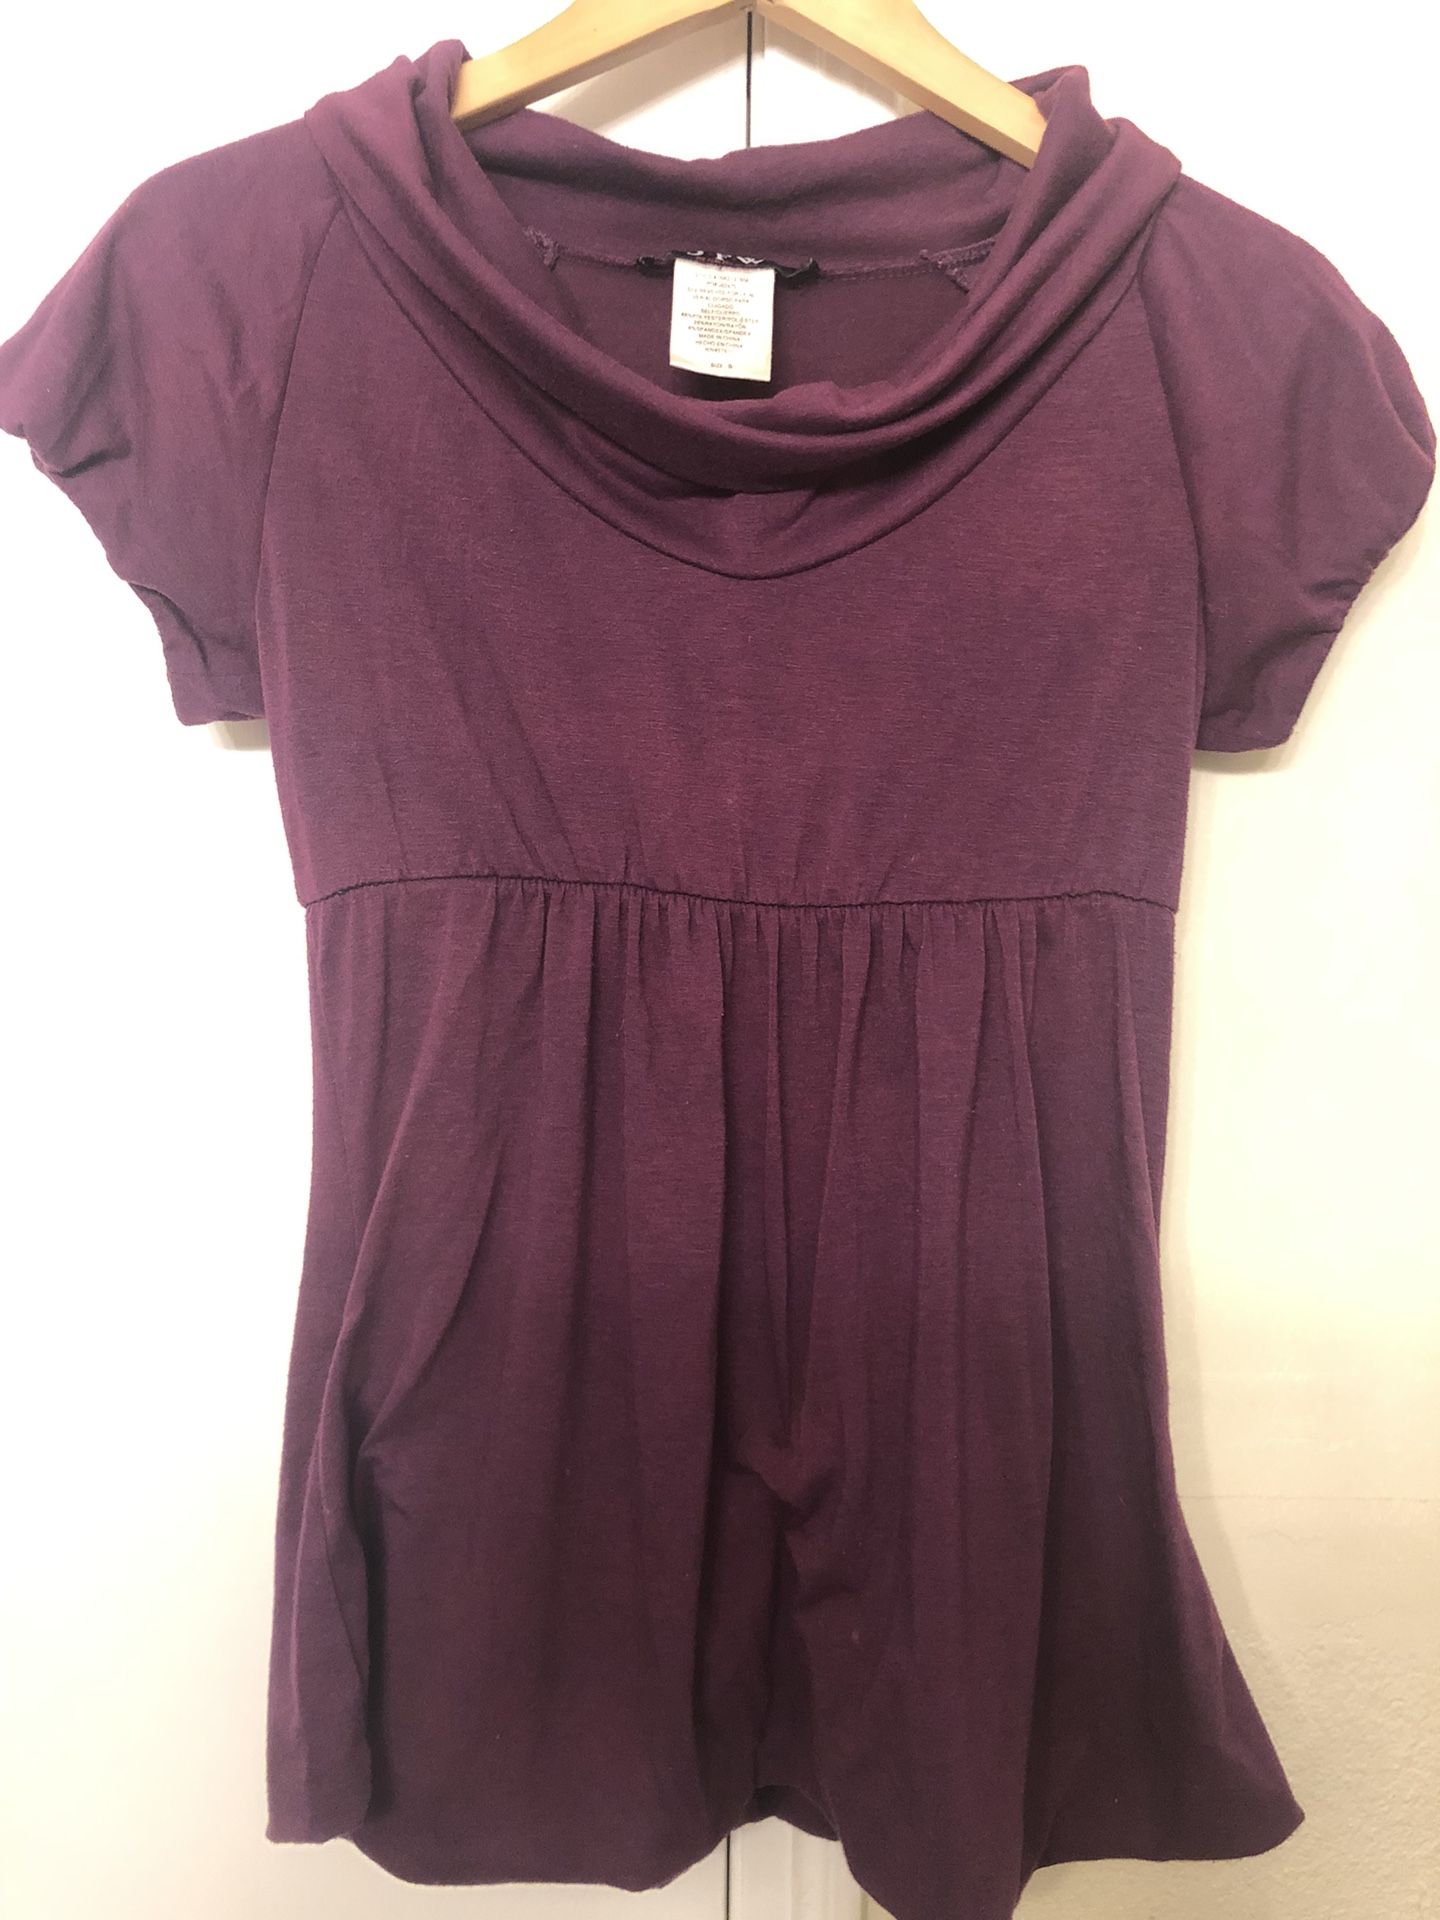 JFW Small Purple Dress Shirt